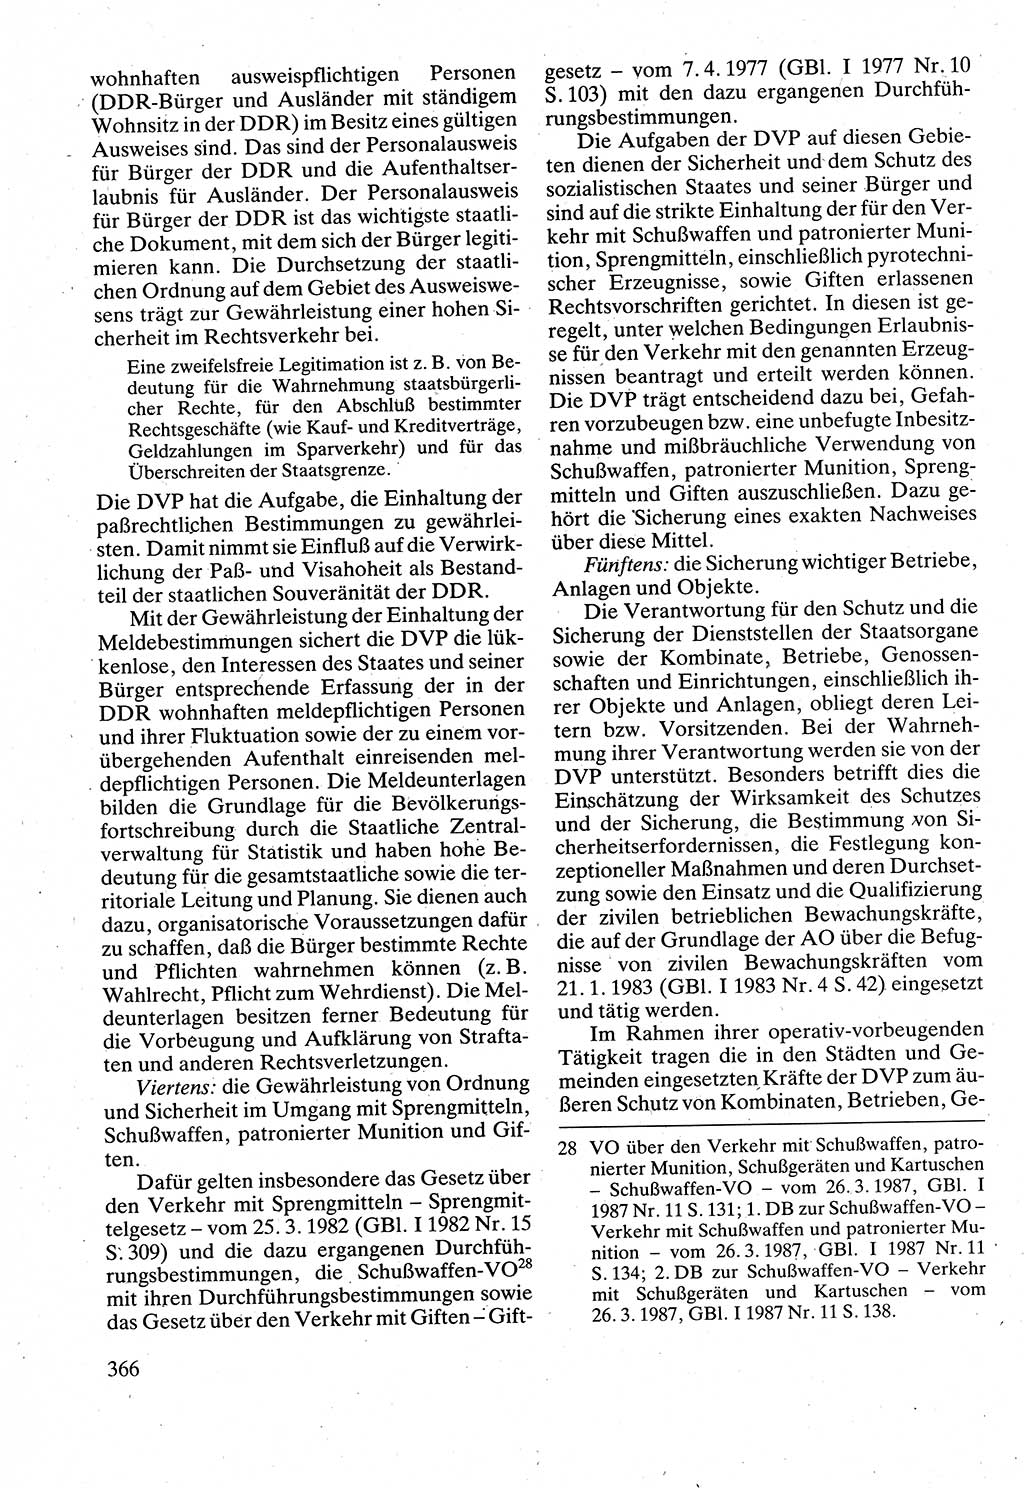 Verwaltungsrecht [Deutsche Demokratische Republik (DDR)], Lehrbuch 1988, Seite 366 (Verw.-R. DDR Lb. 1988, S. 366)